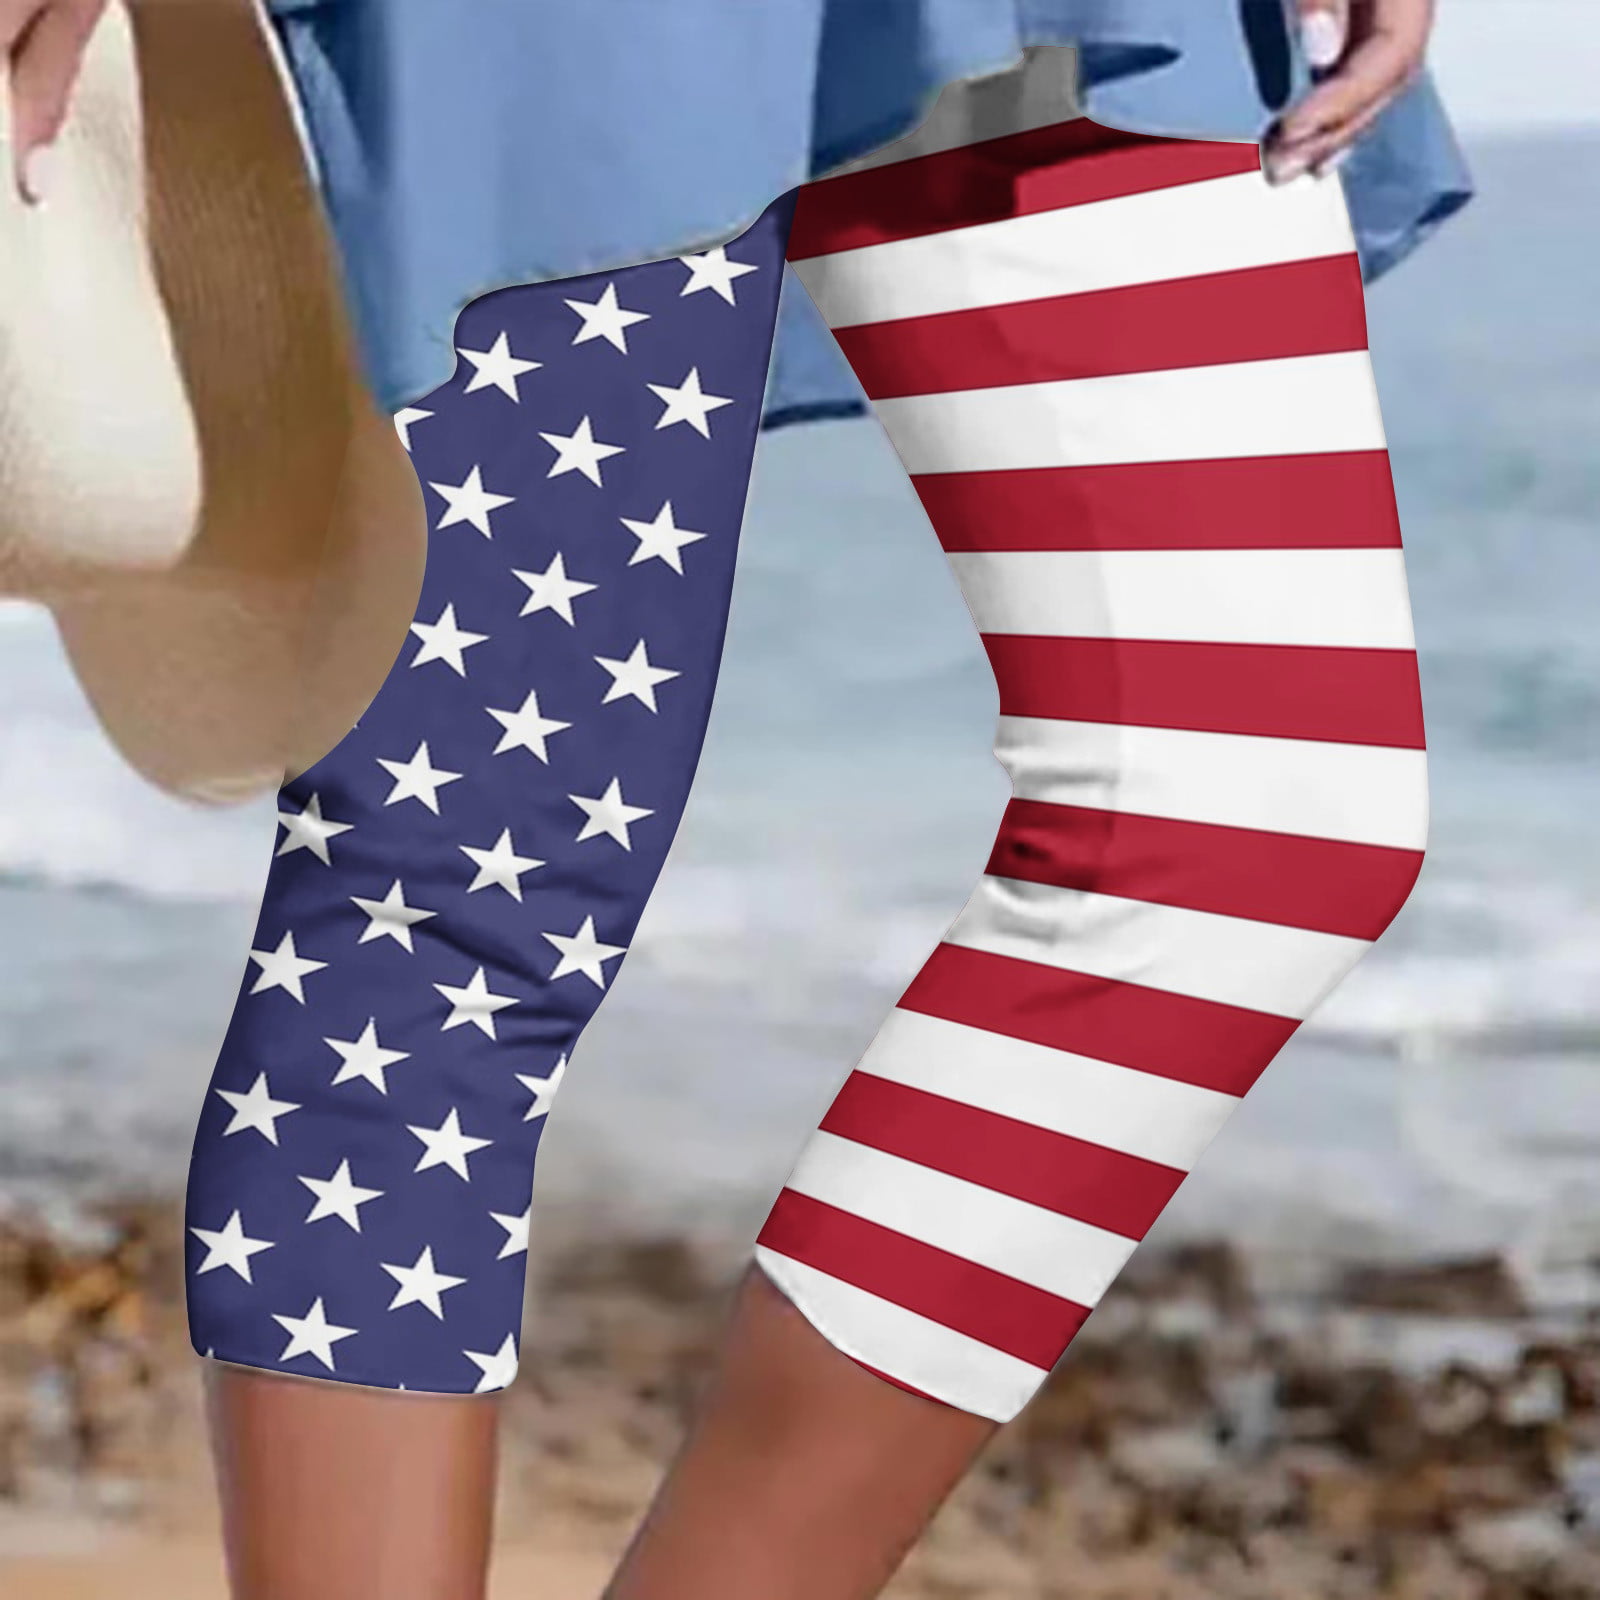 Gaecuw Capri Pants for Women Plus Size Capri Leggings Long Pants Lounge ...